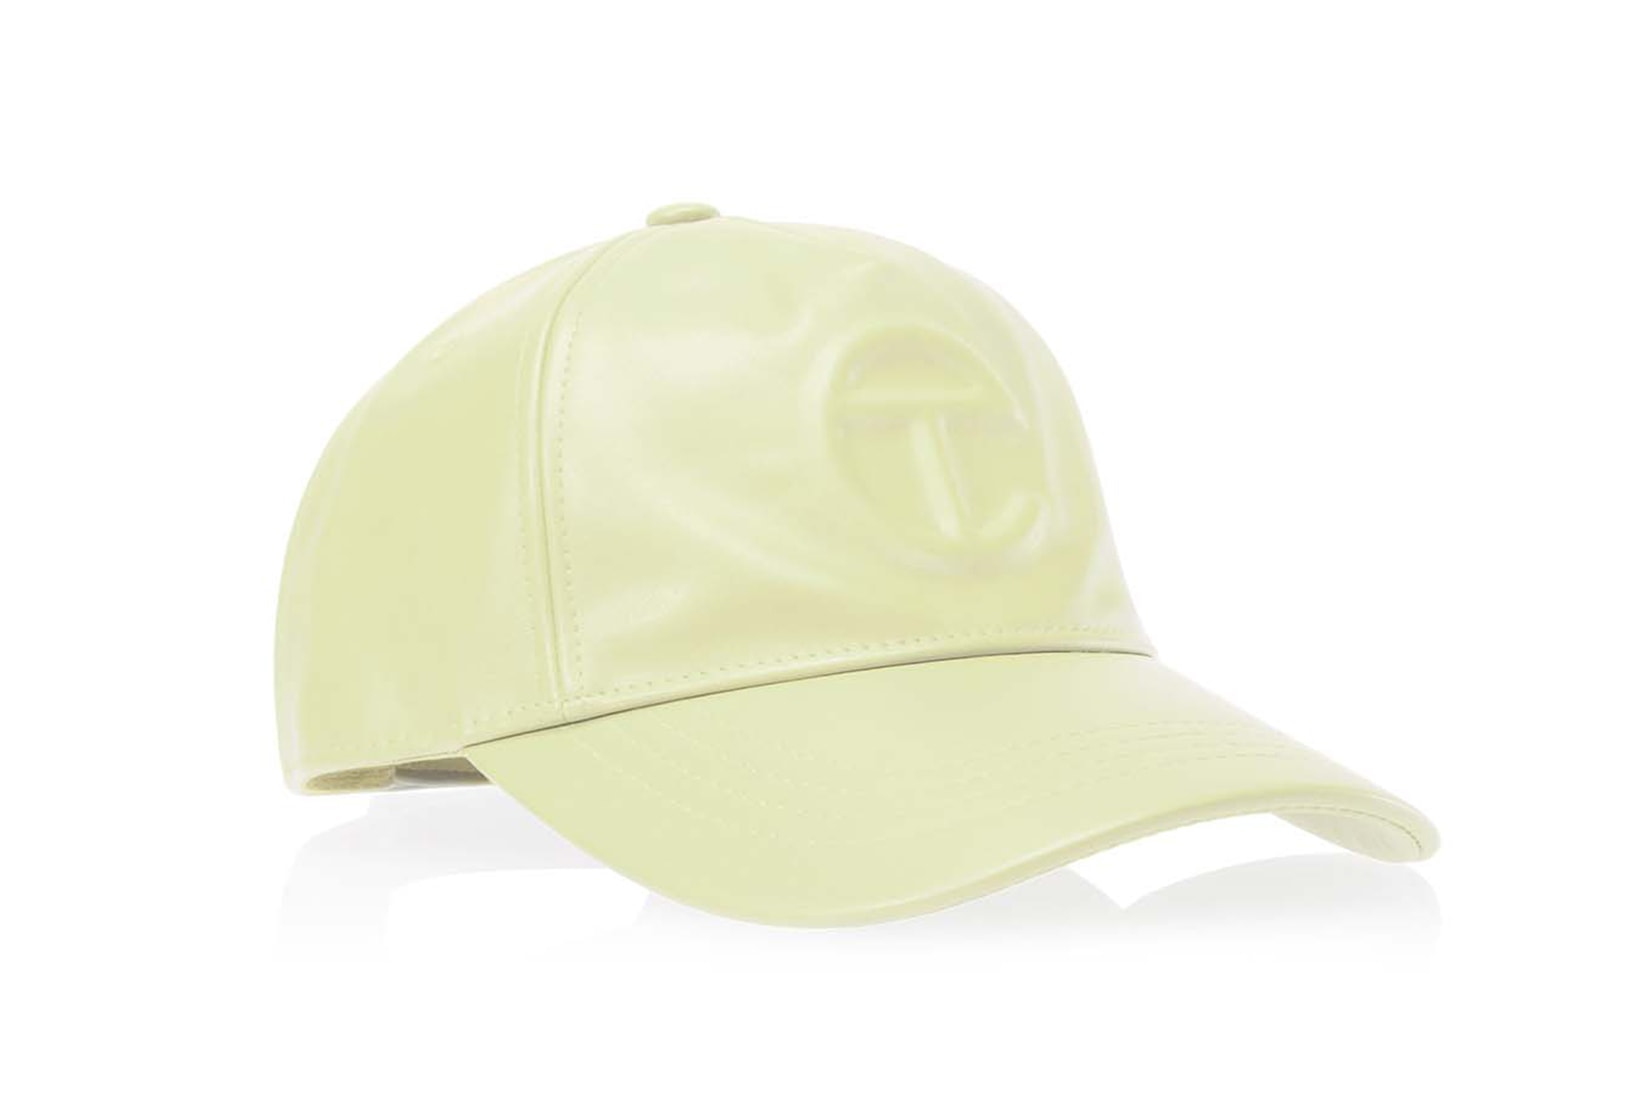 Telfar "Glue" Collection Shopping Bag Hats